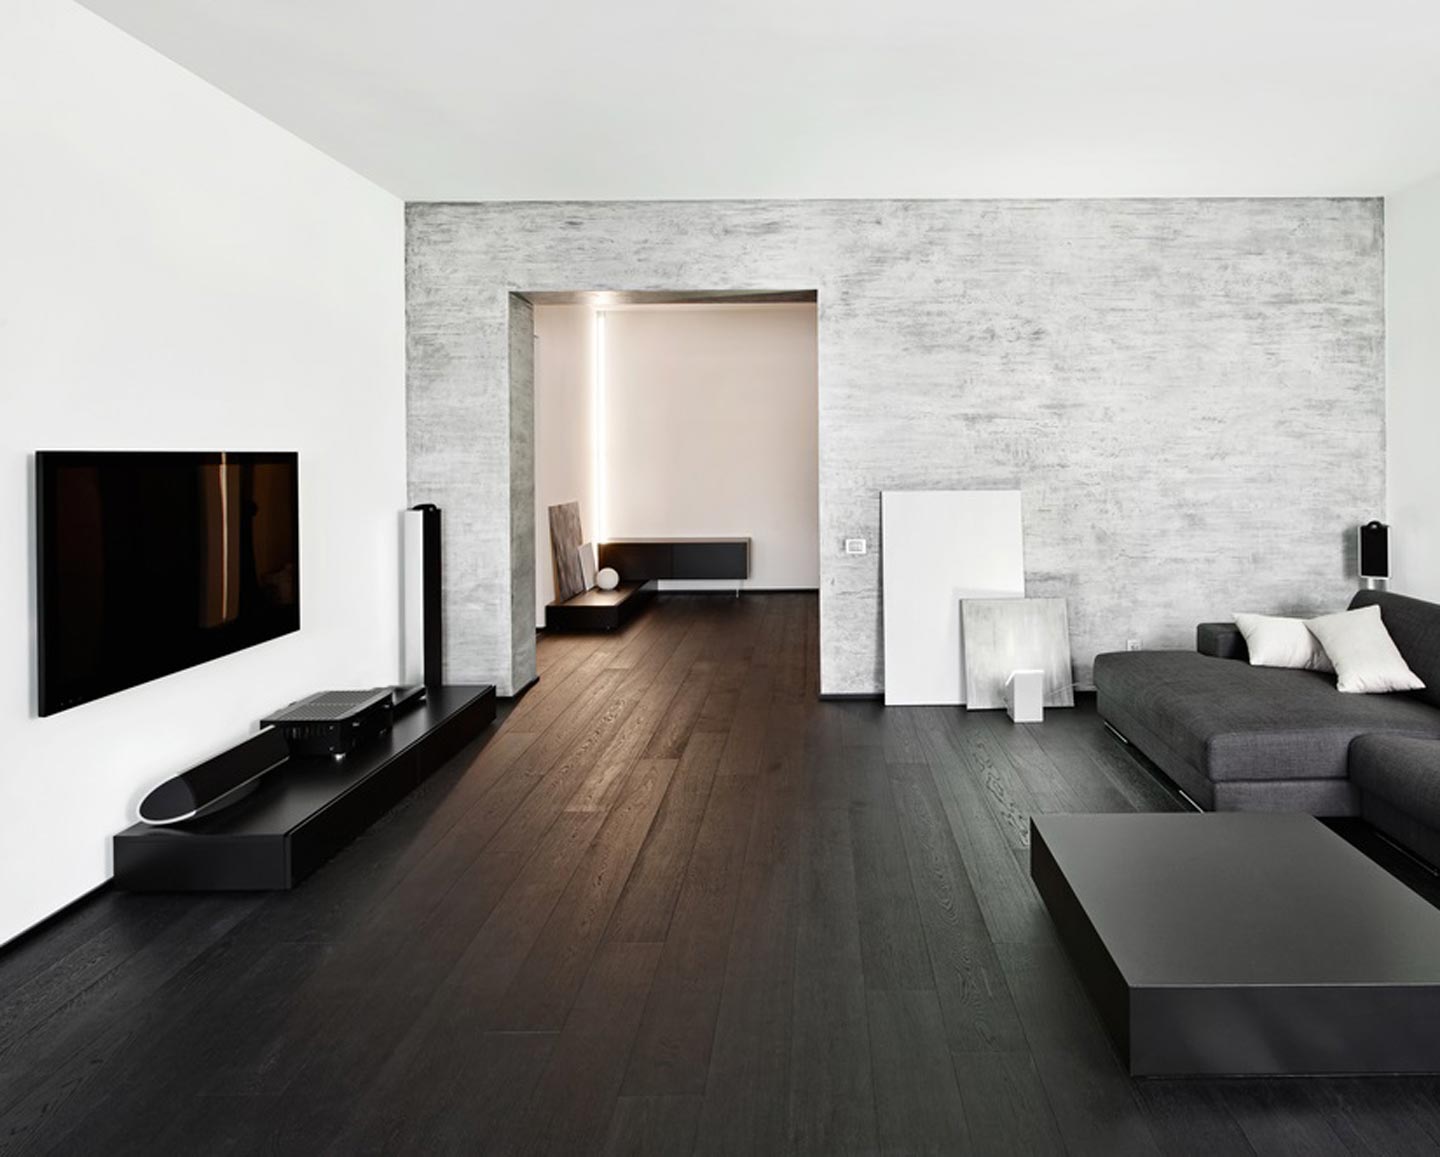 Pavimento in legno scuro all'interno della sala in stile minimalista